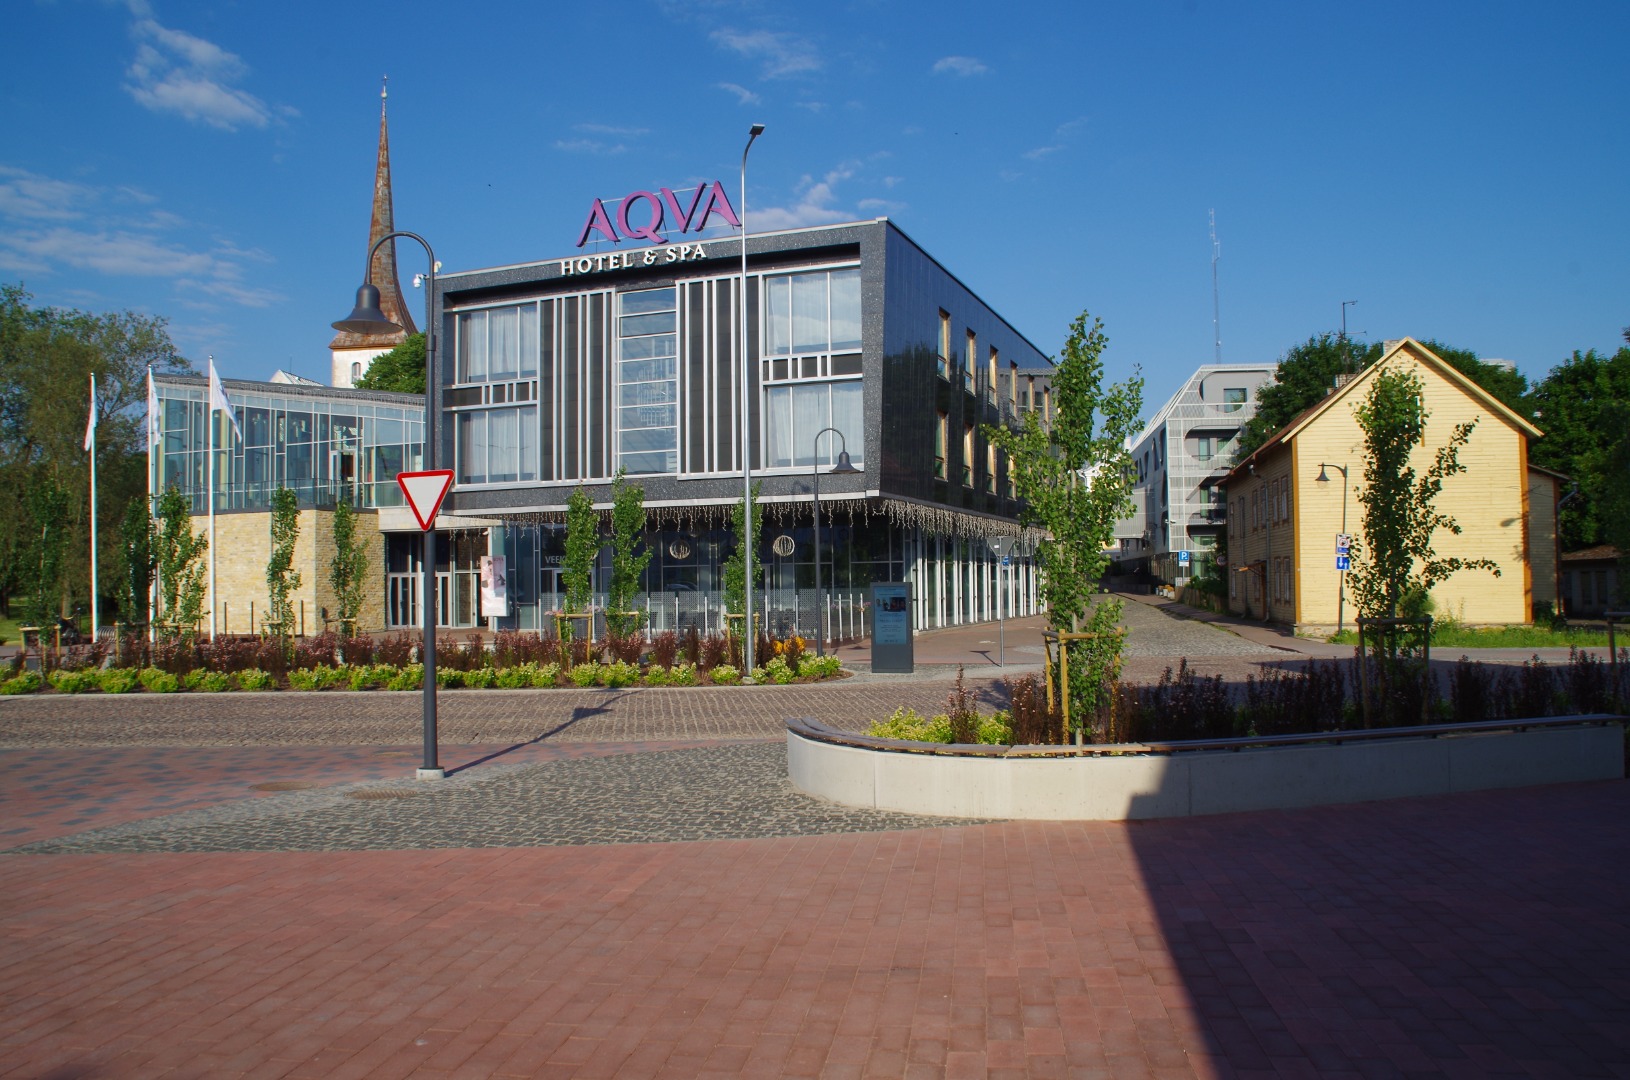 AQVA hotell ja spa Rakveres, vaade hoonele. Arhitektid Mart Kadarik, Anu Tammemägi, Erkki Ristoja, Anu Paeveer rephoto